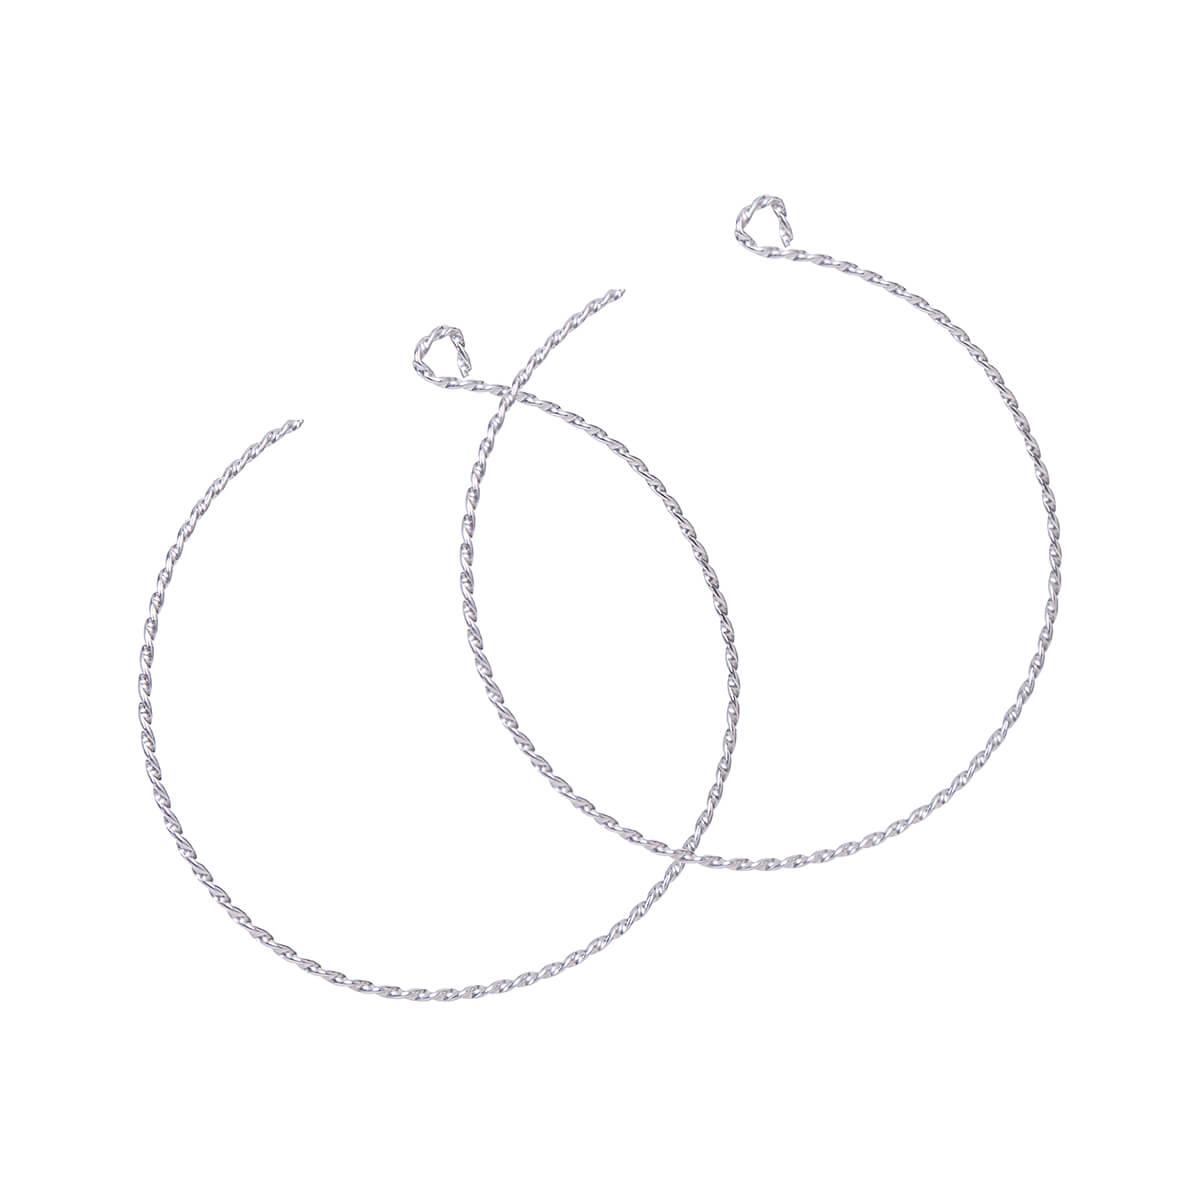  Backward Loop Twist Silver Earrings - Extra Large